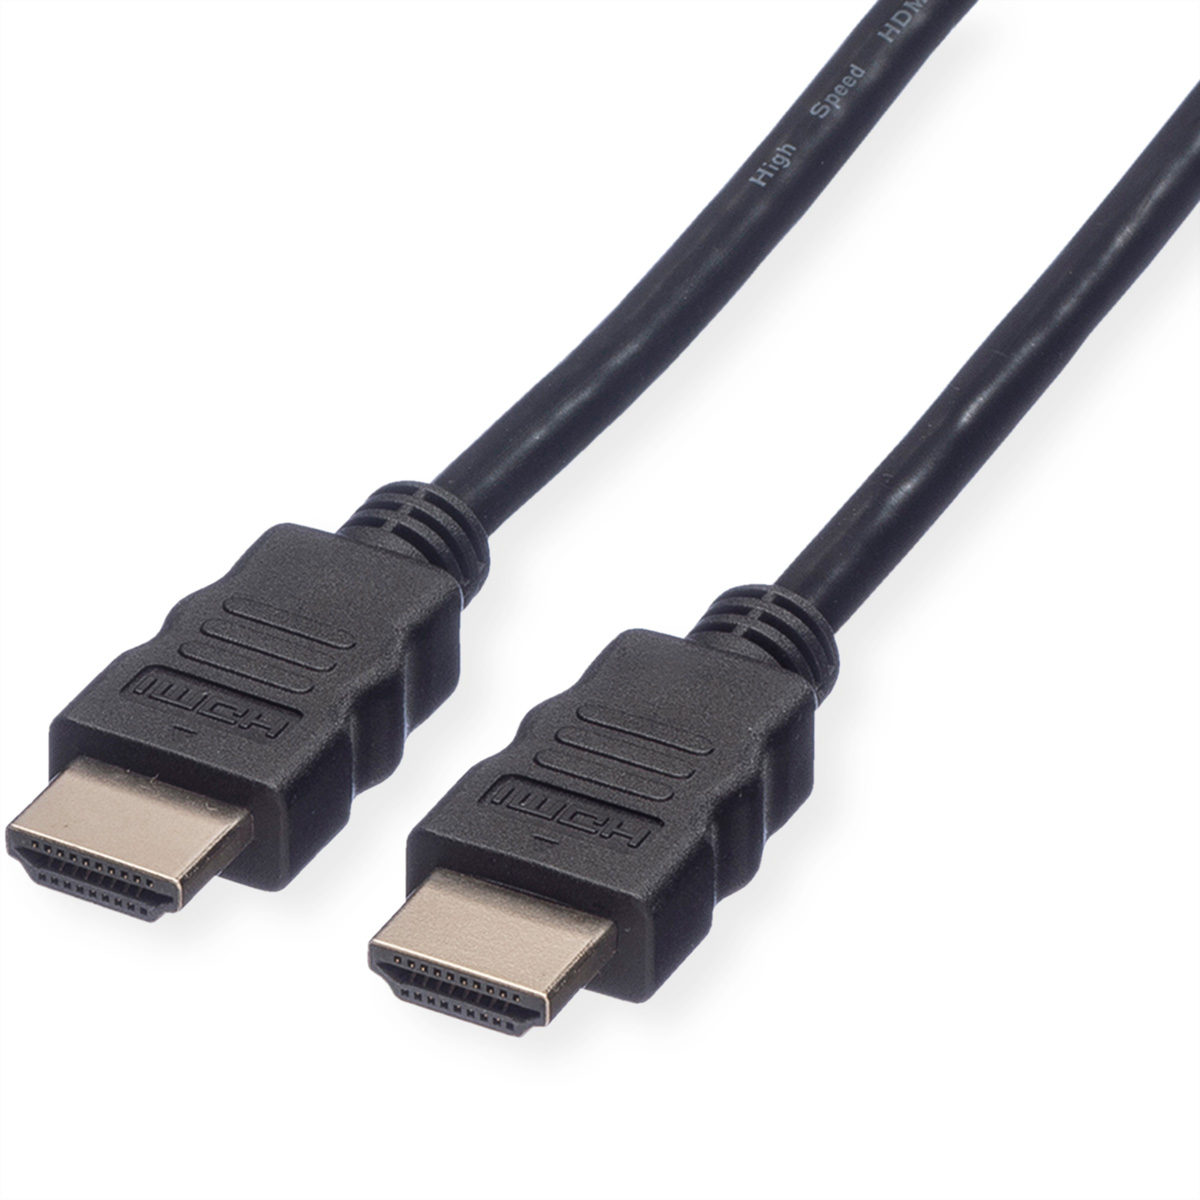 ROLINE HDMI High Speed Kabel mit Ethernet, schwarz, 1,5 m